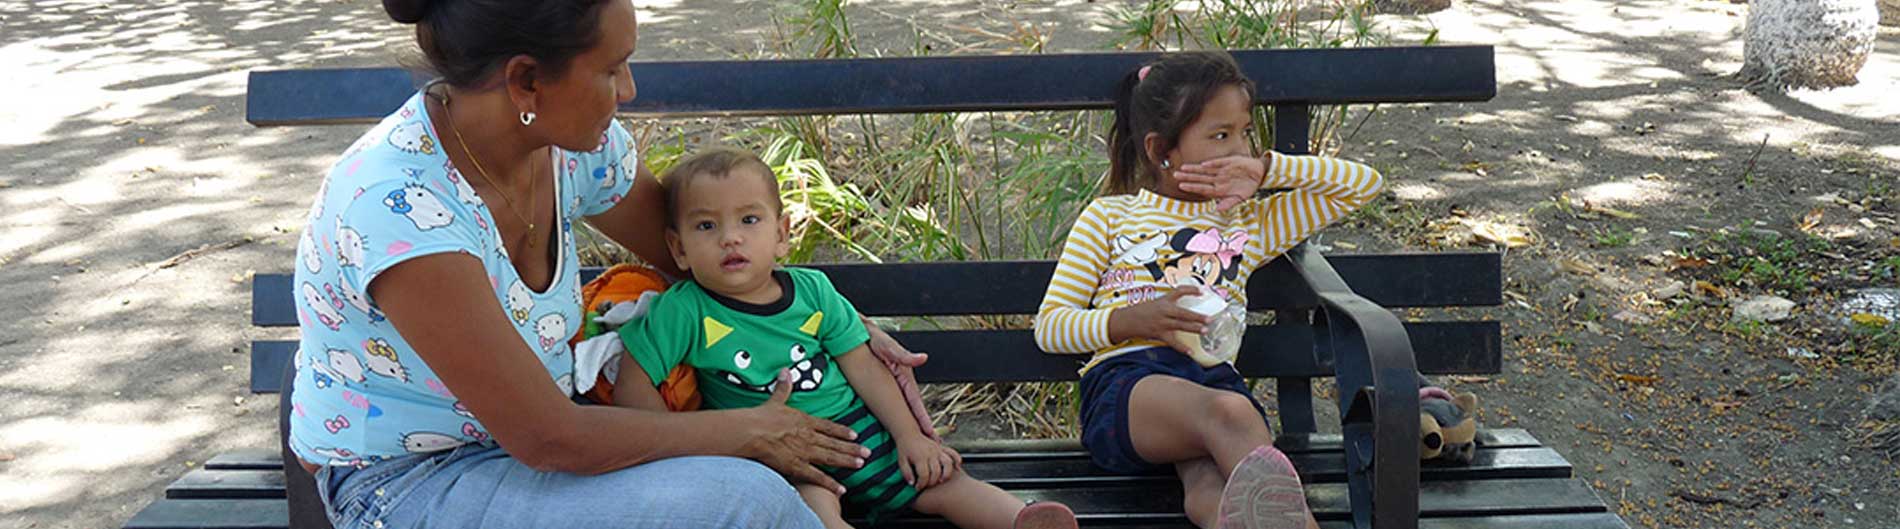 Venezuela desnutrición infancia campaña donación CESAL